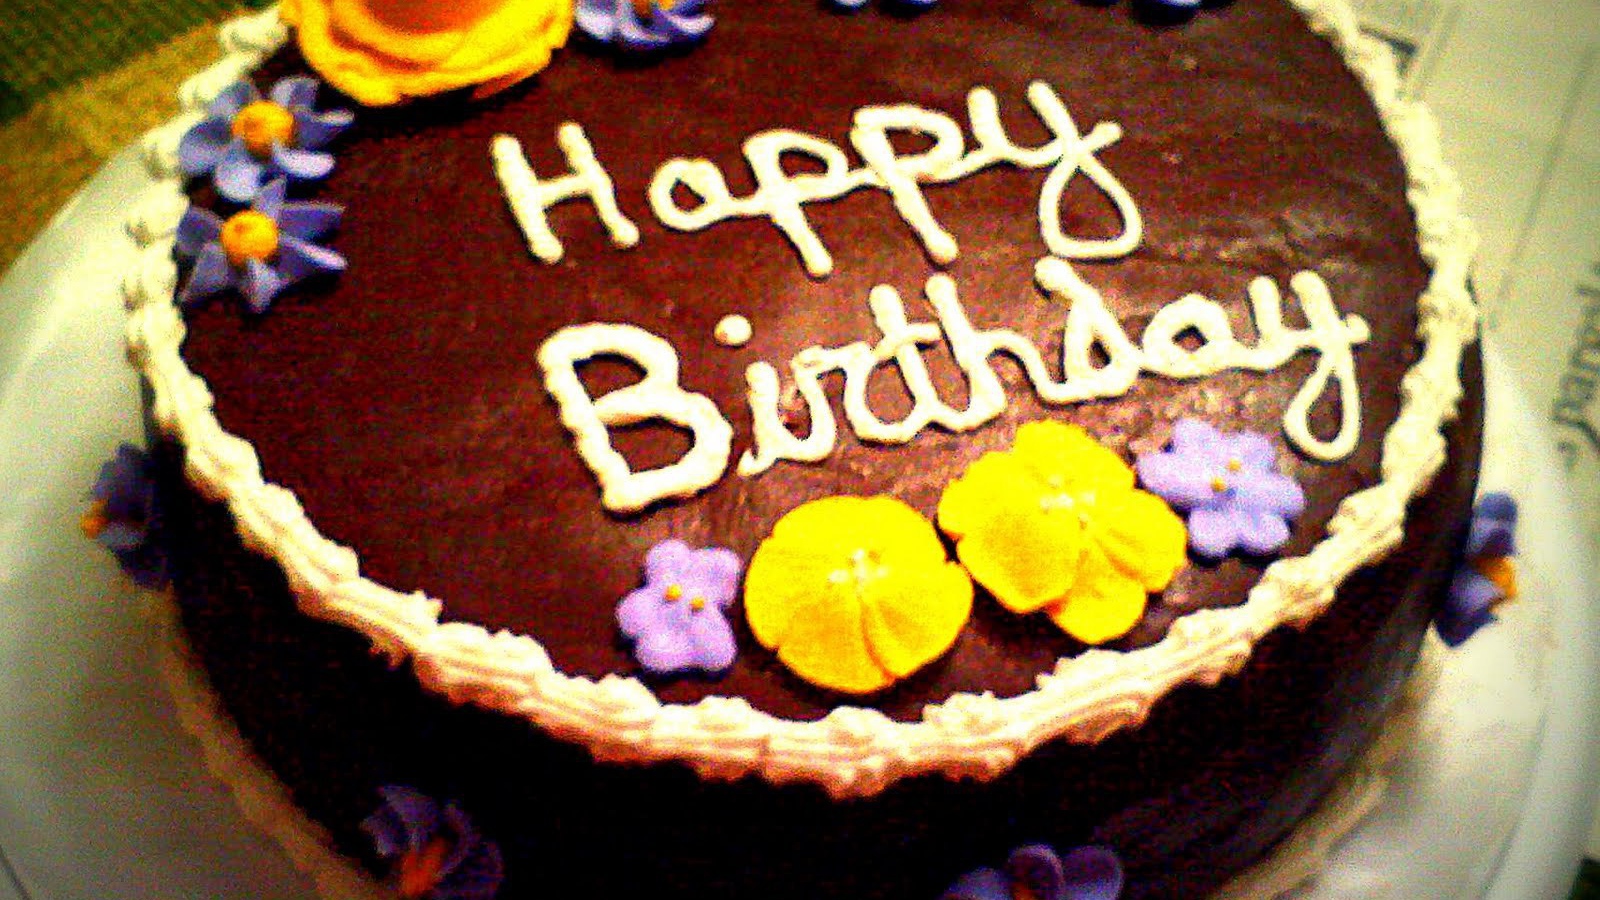  Шоколадный торт на день рождения